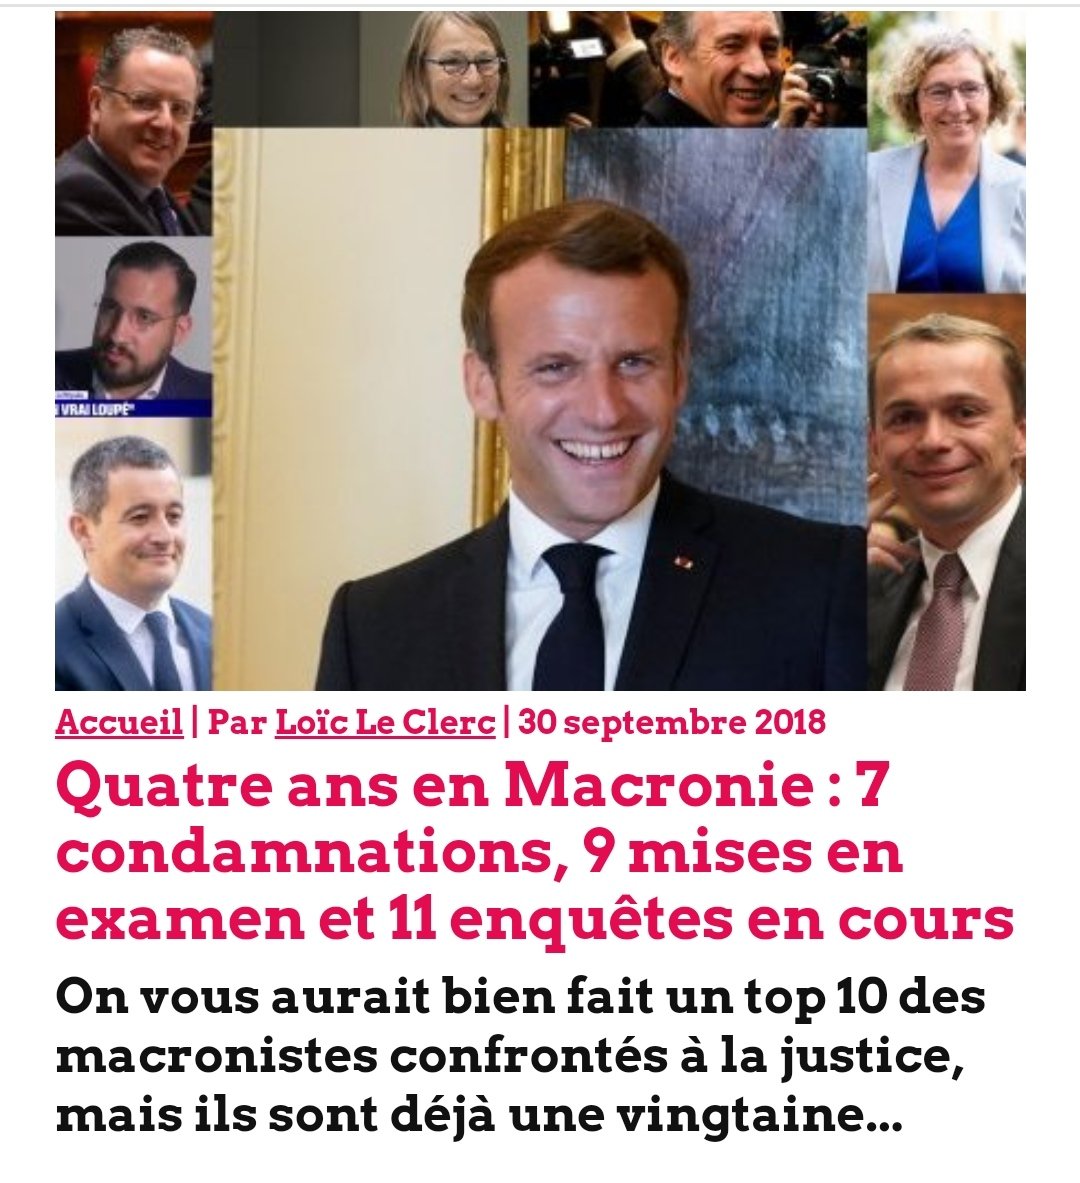 et une enquete sur #Macron avec #Rothschild, #Alstom, #Mckinsey ... ????

#MacronDemission
#MacronEnPrison
#legislatives2022 
#macrondegage2022